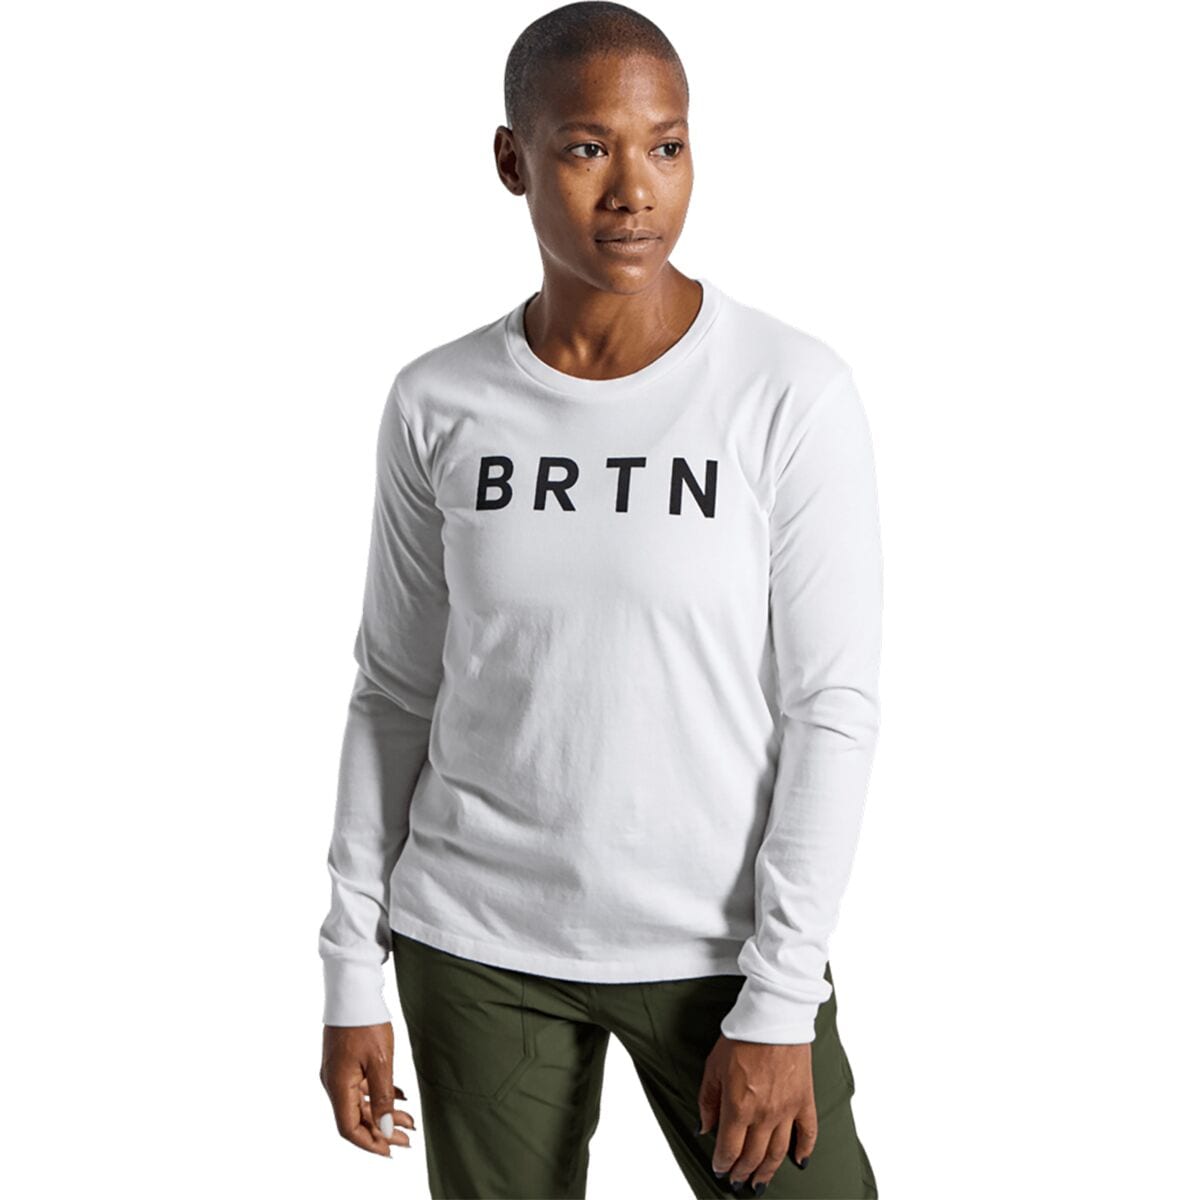 BRTN Long-Sleeve T-Shirt - Women